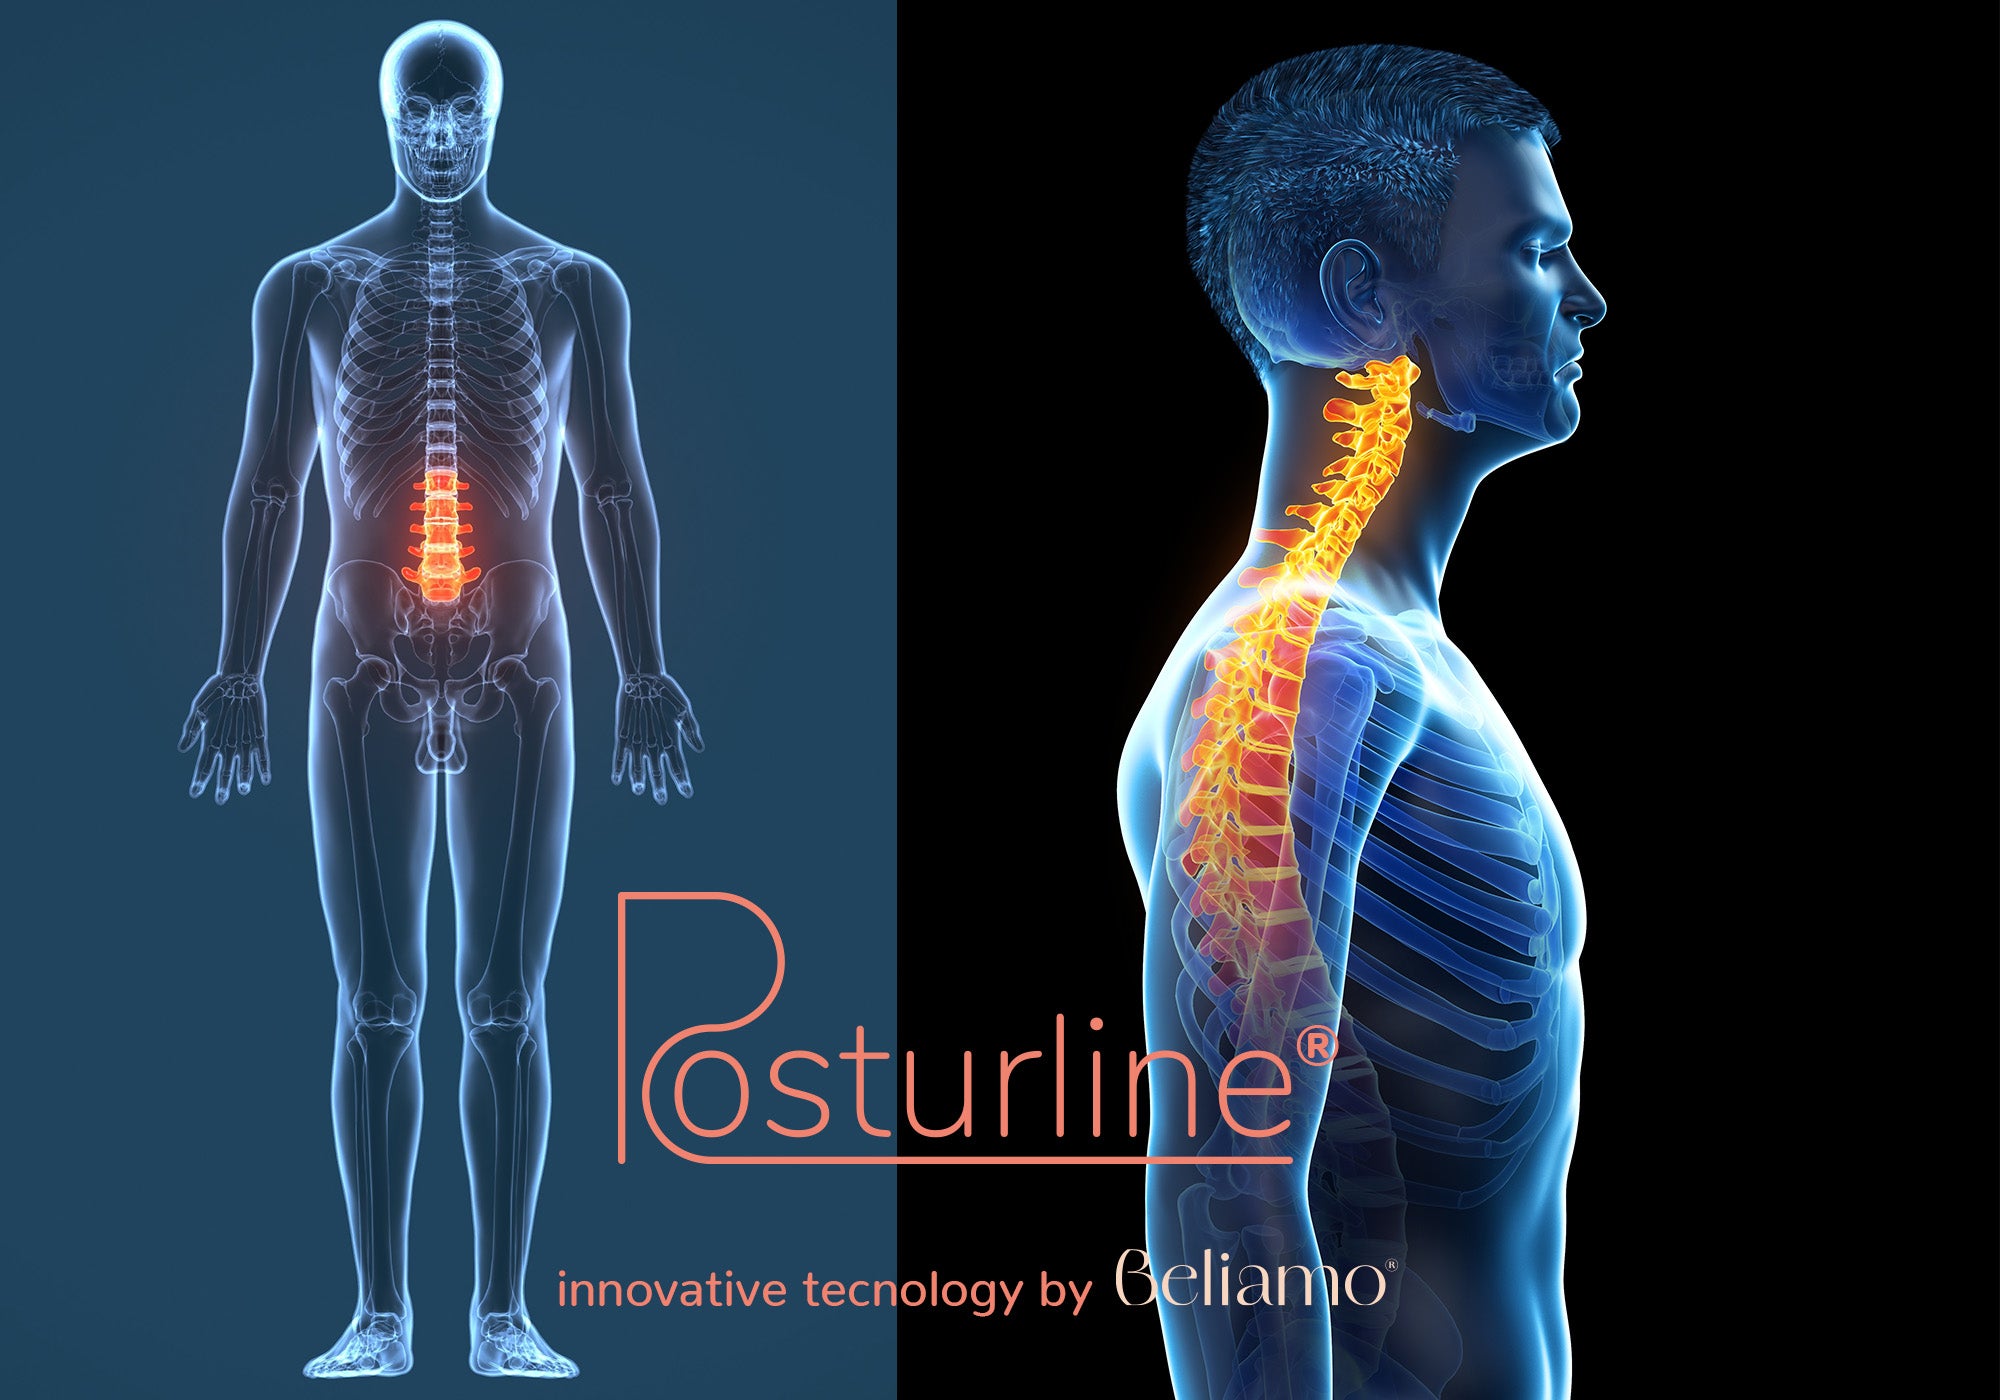 Allineamento spinale con tecnologia PosturLine di Beliamo che mostra come il materasso supporta ergonomicamente la colonna vertebrale per un comfort ottimale